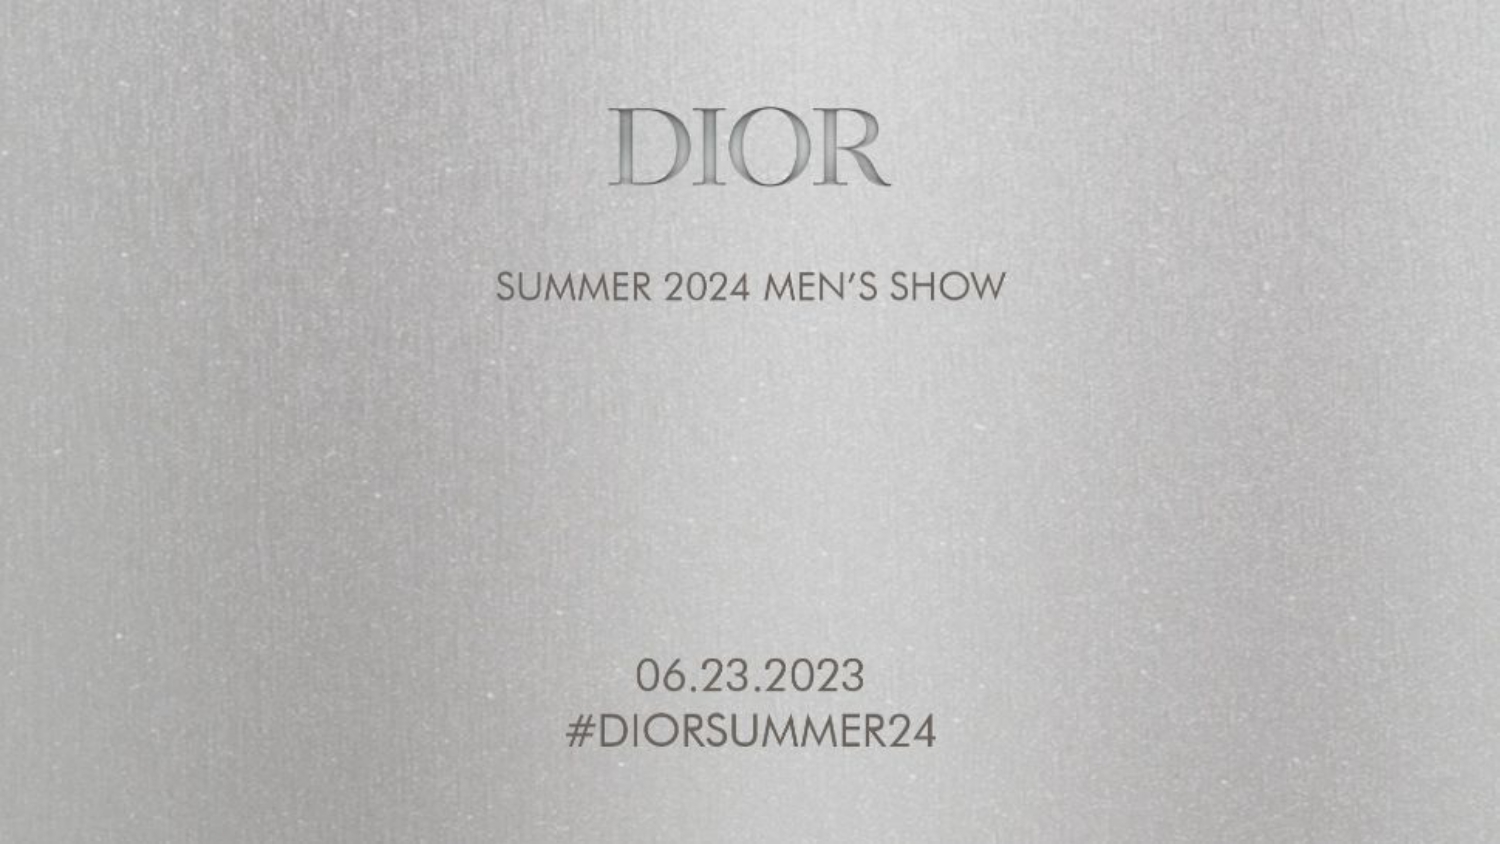 Hoài niệm về thời huy hoàng của Dior dưới thời Yves Saint Laurent | Thời  trang | Vietnam+ (VietnamPlus)